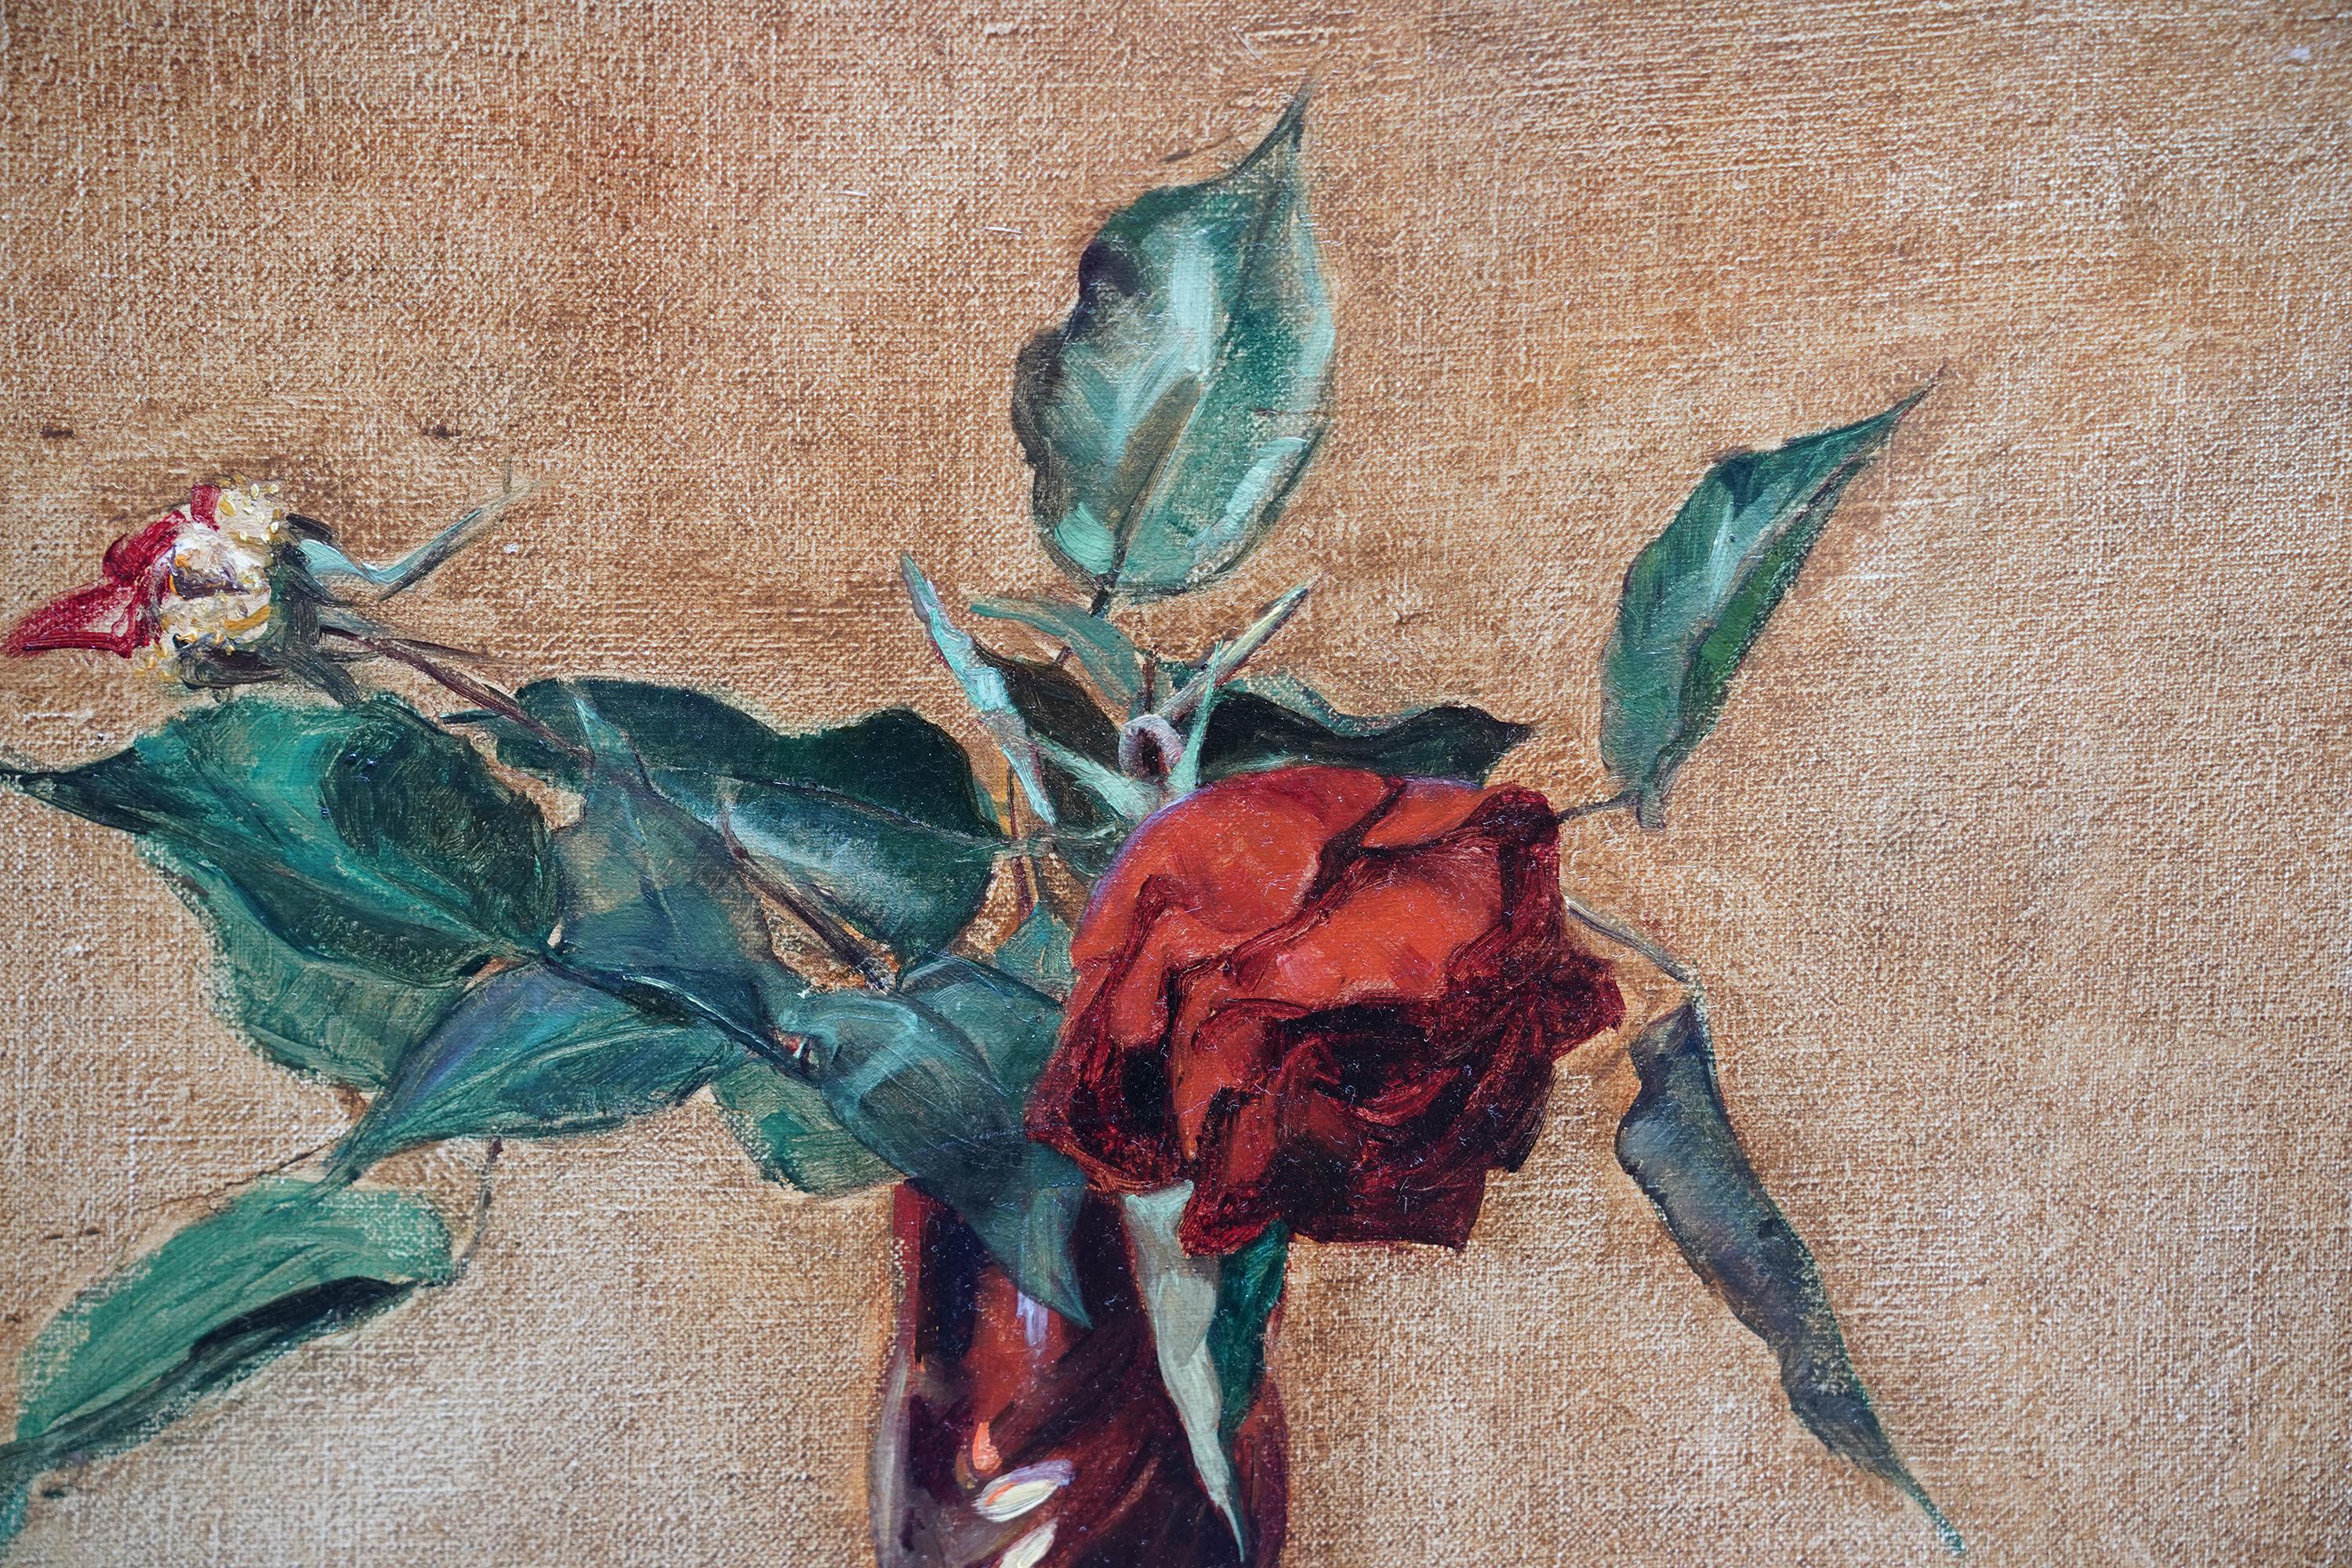 Dieses schöne britische Blumenstillleben ist ein Ölgemälde der bekannten Künstlerin Alice Mary Burton. Es wurde um 1935 gemalt und zeigt ein Blumenarrangement aus roten Rosen in einer Vase. Ein hübsches florales Ölgemälde im Art-Deco-Stil von einer